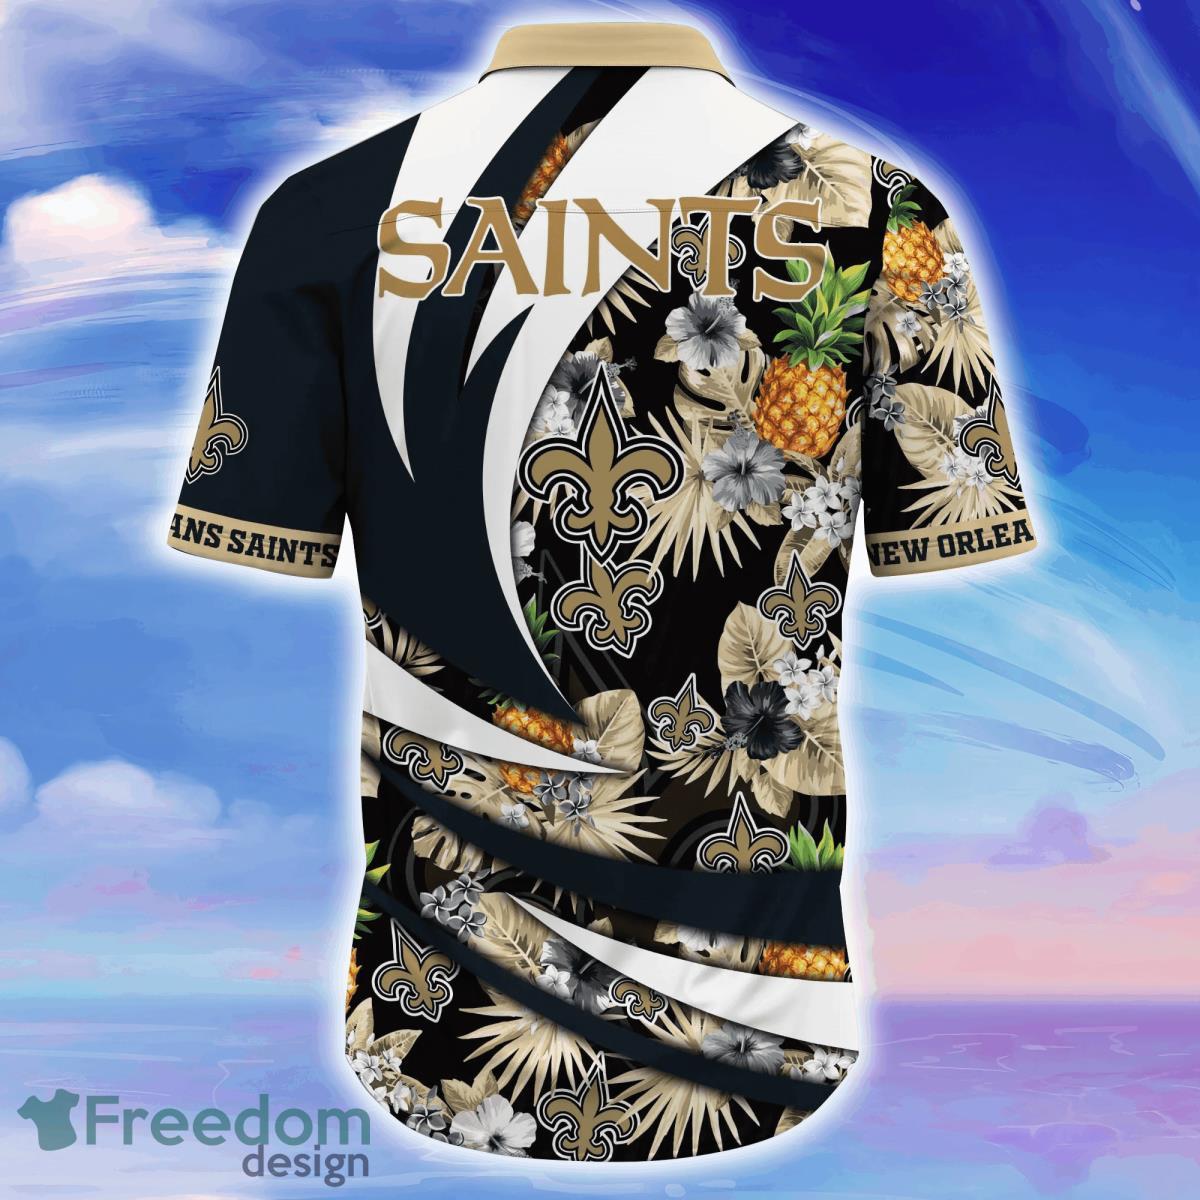 new orleans saints jersey